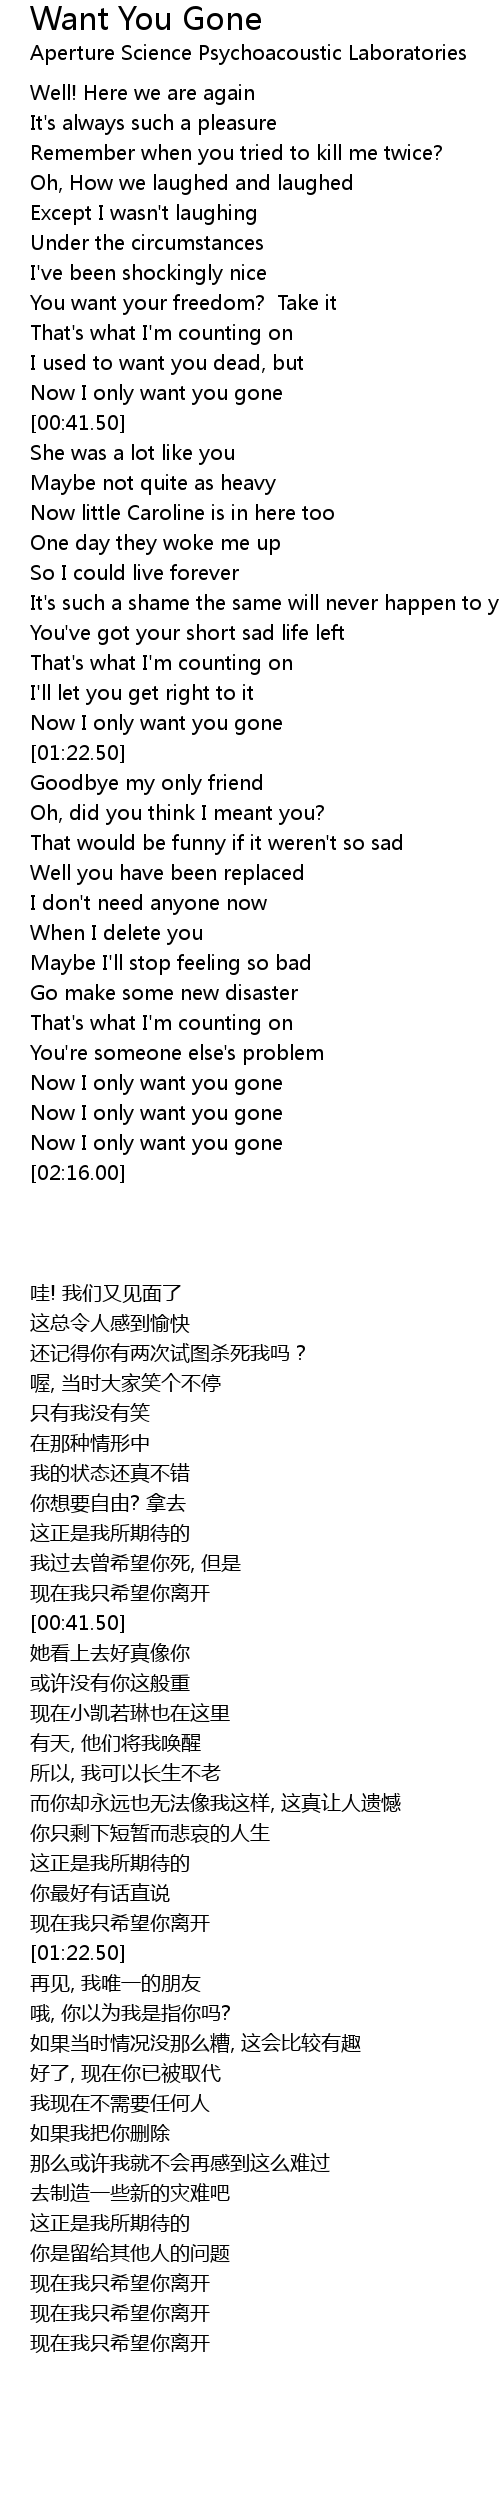 [最も人気のある！] want you gone portal lyrics 457601-I only want you gone ...